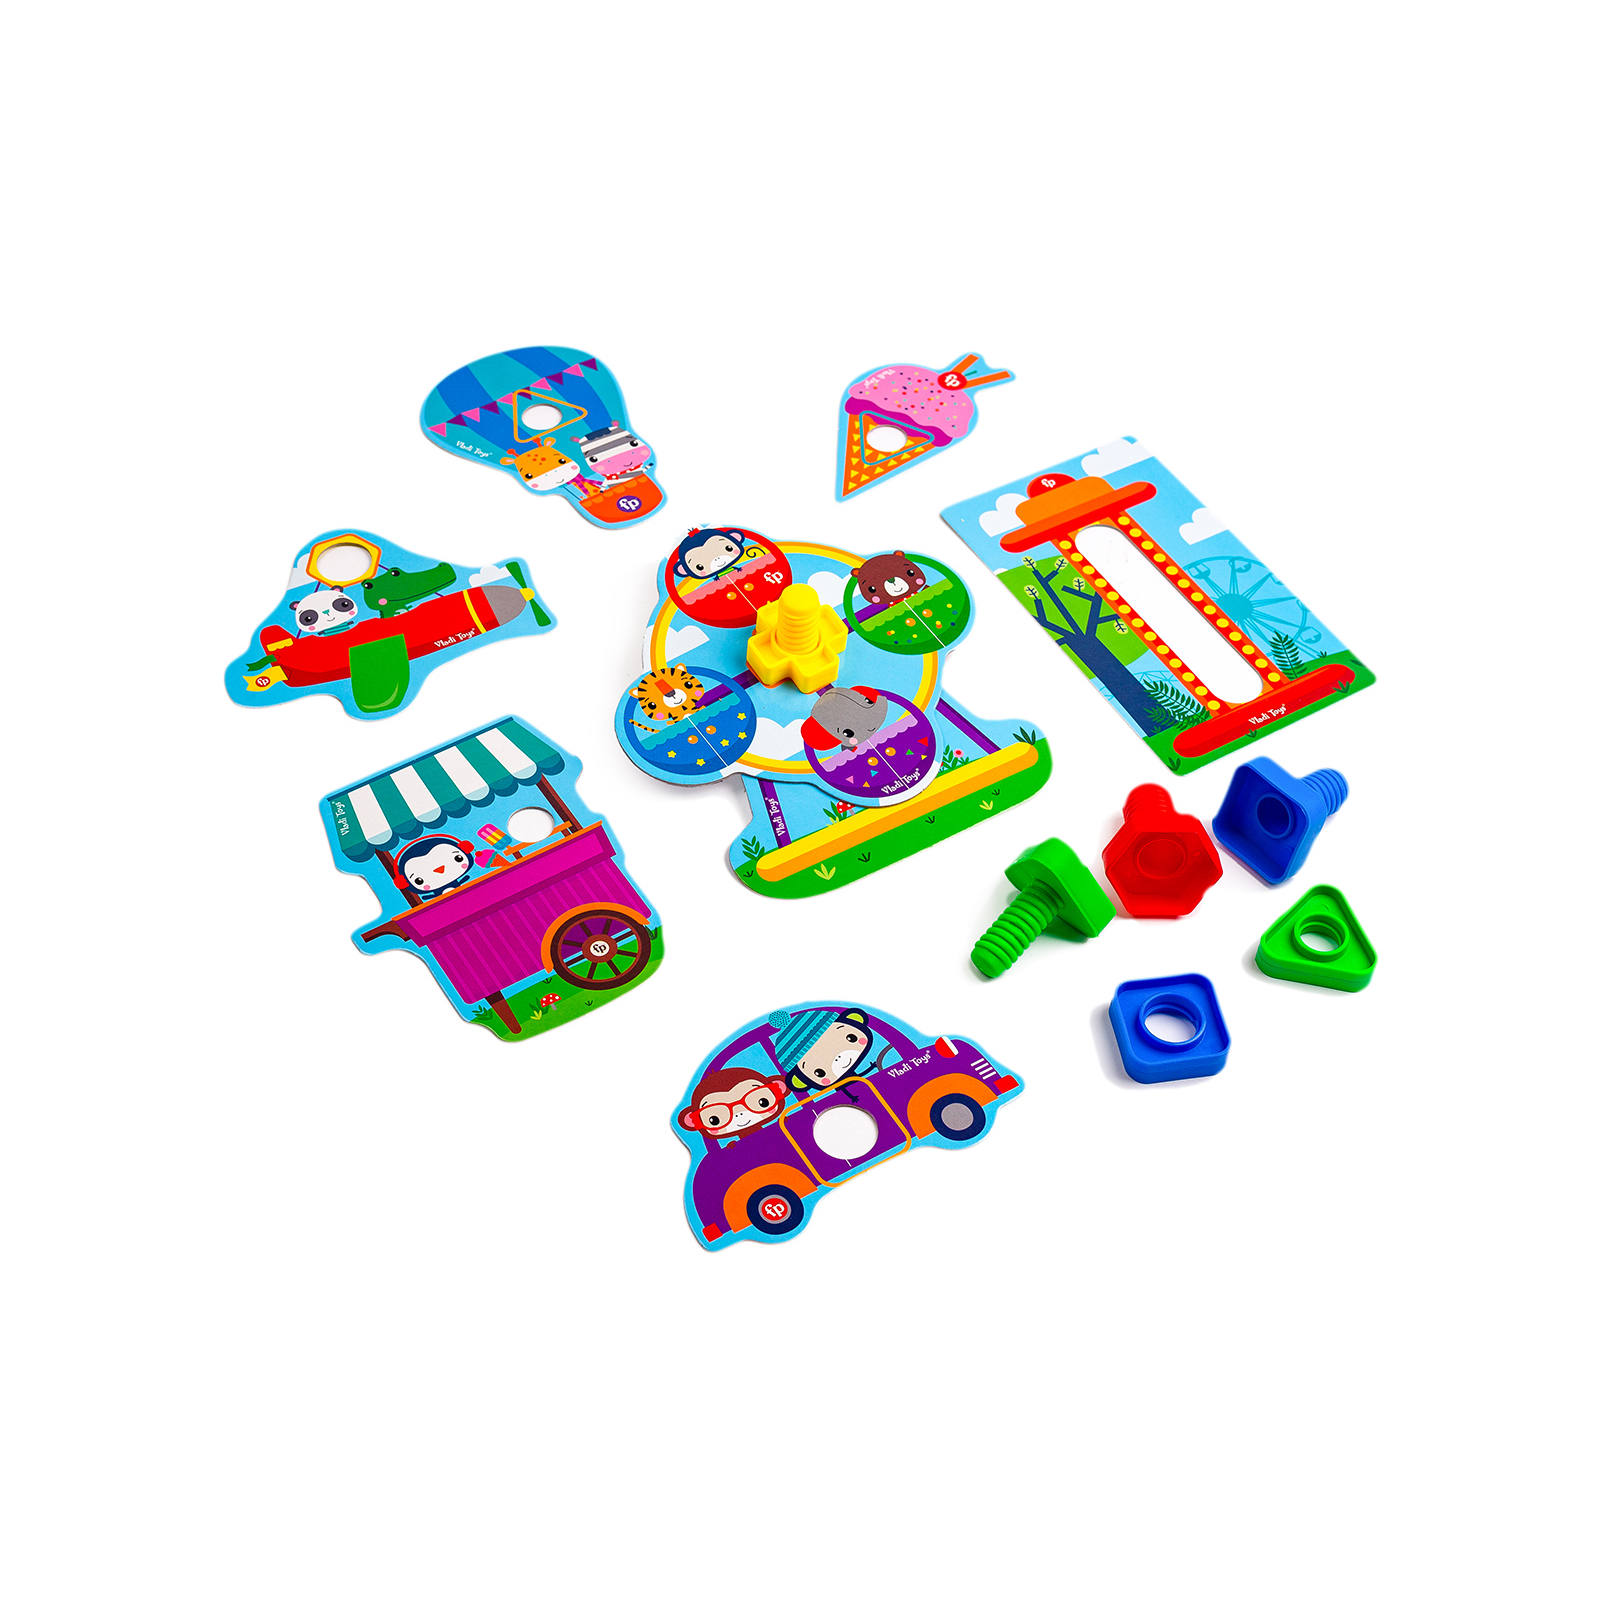 Развивающая игрушка Vladi Toys Fisher Price Парк развлечений для малышей (укр) (VT2905-21) изображение 2